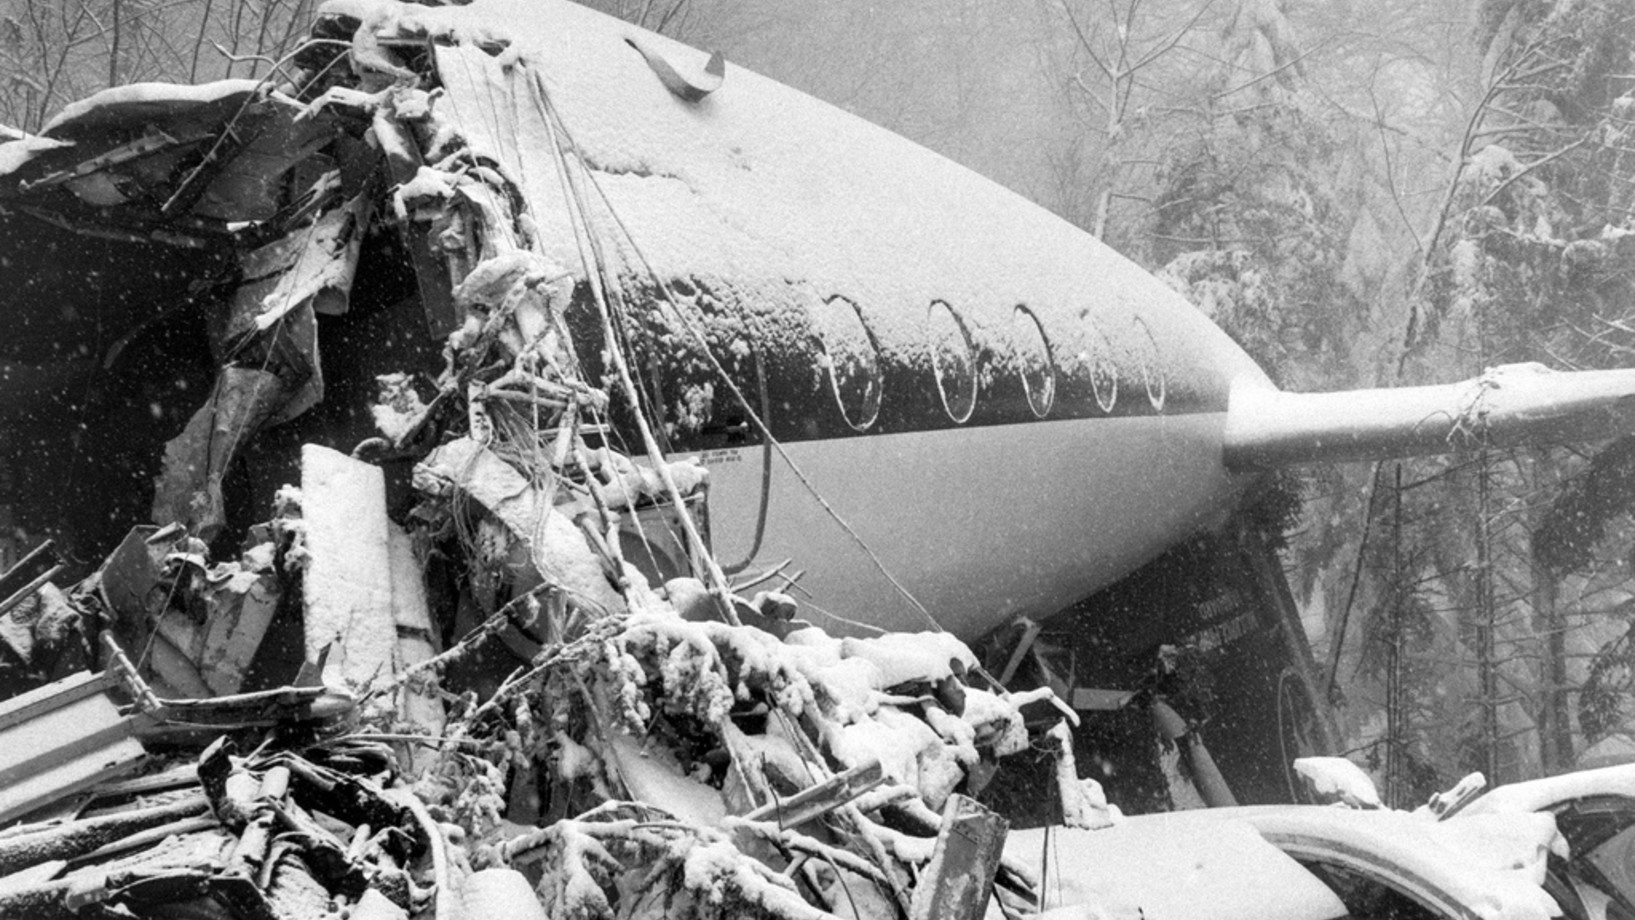 Am 10. April 1973 ereignete sich das bisher schwerste Flugzeugunglück in der Schweiz. 108 Menschen starben, als eine englische Chartermaschine bei Hochwald (SO) unweit von Basel abstürzte.